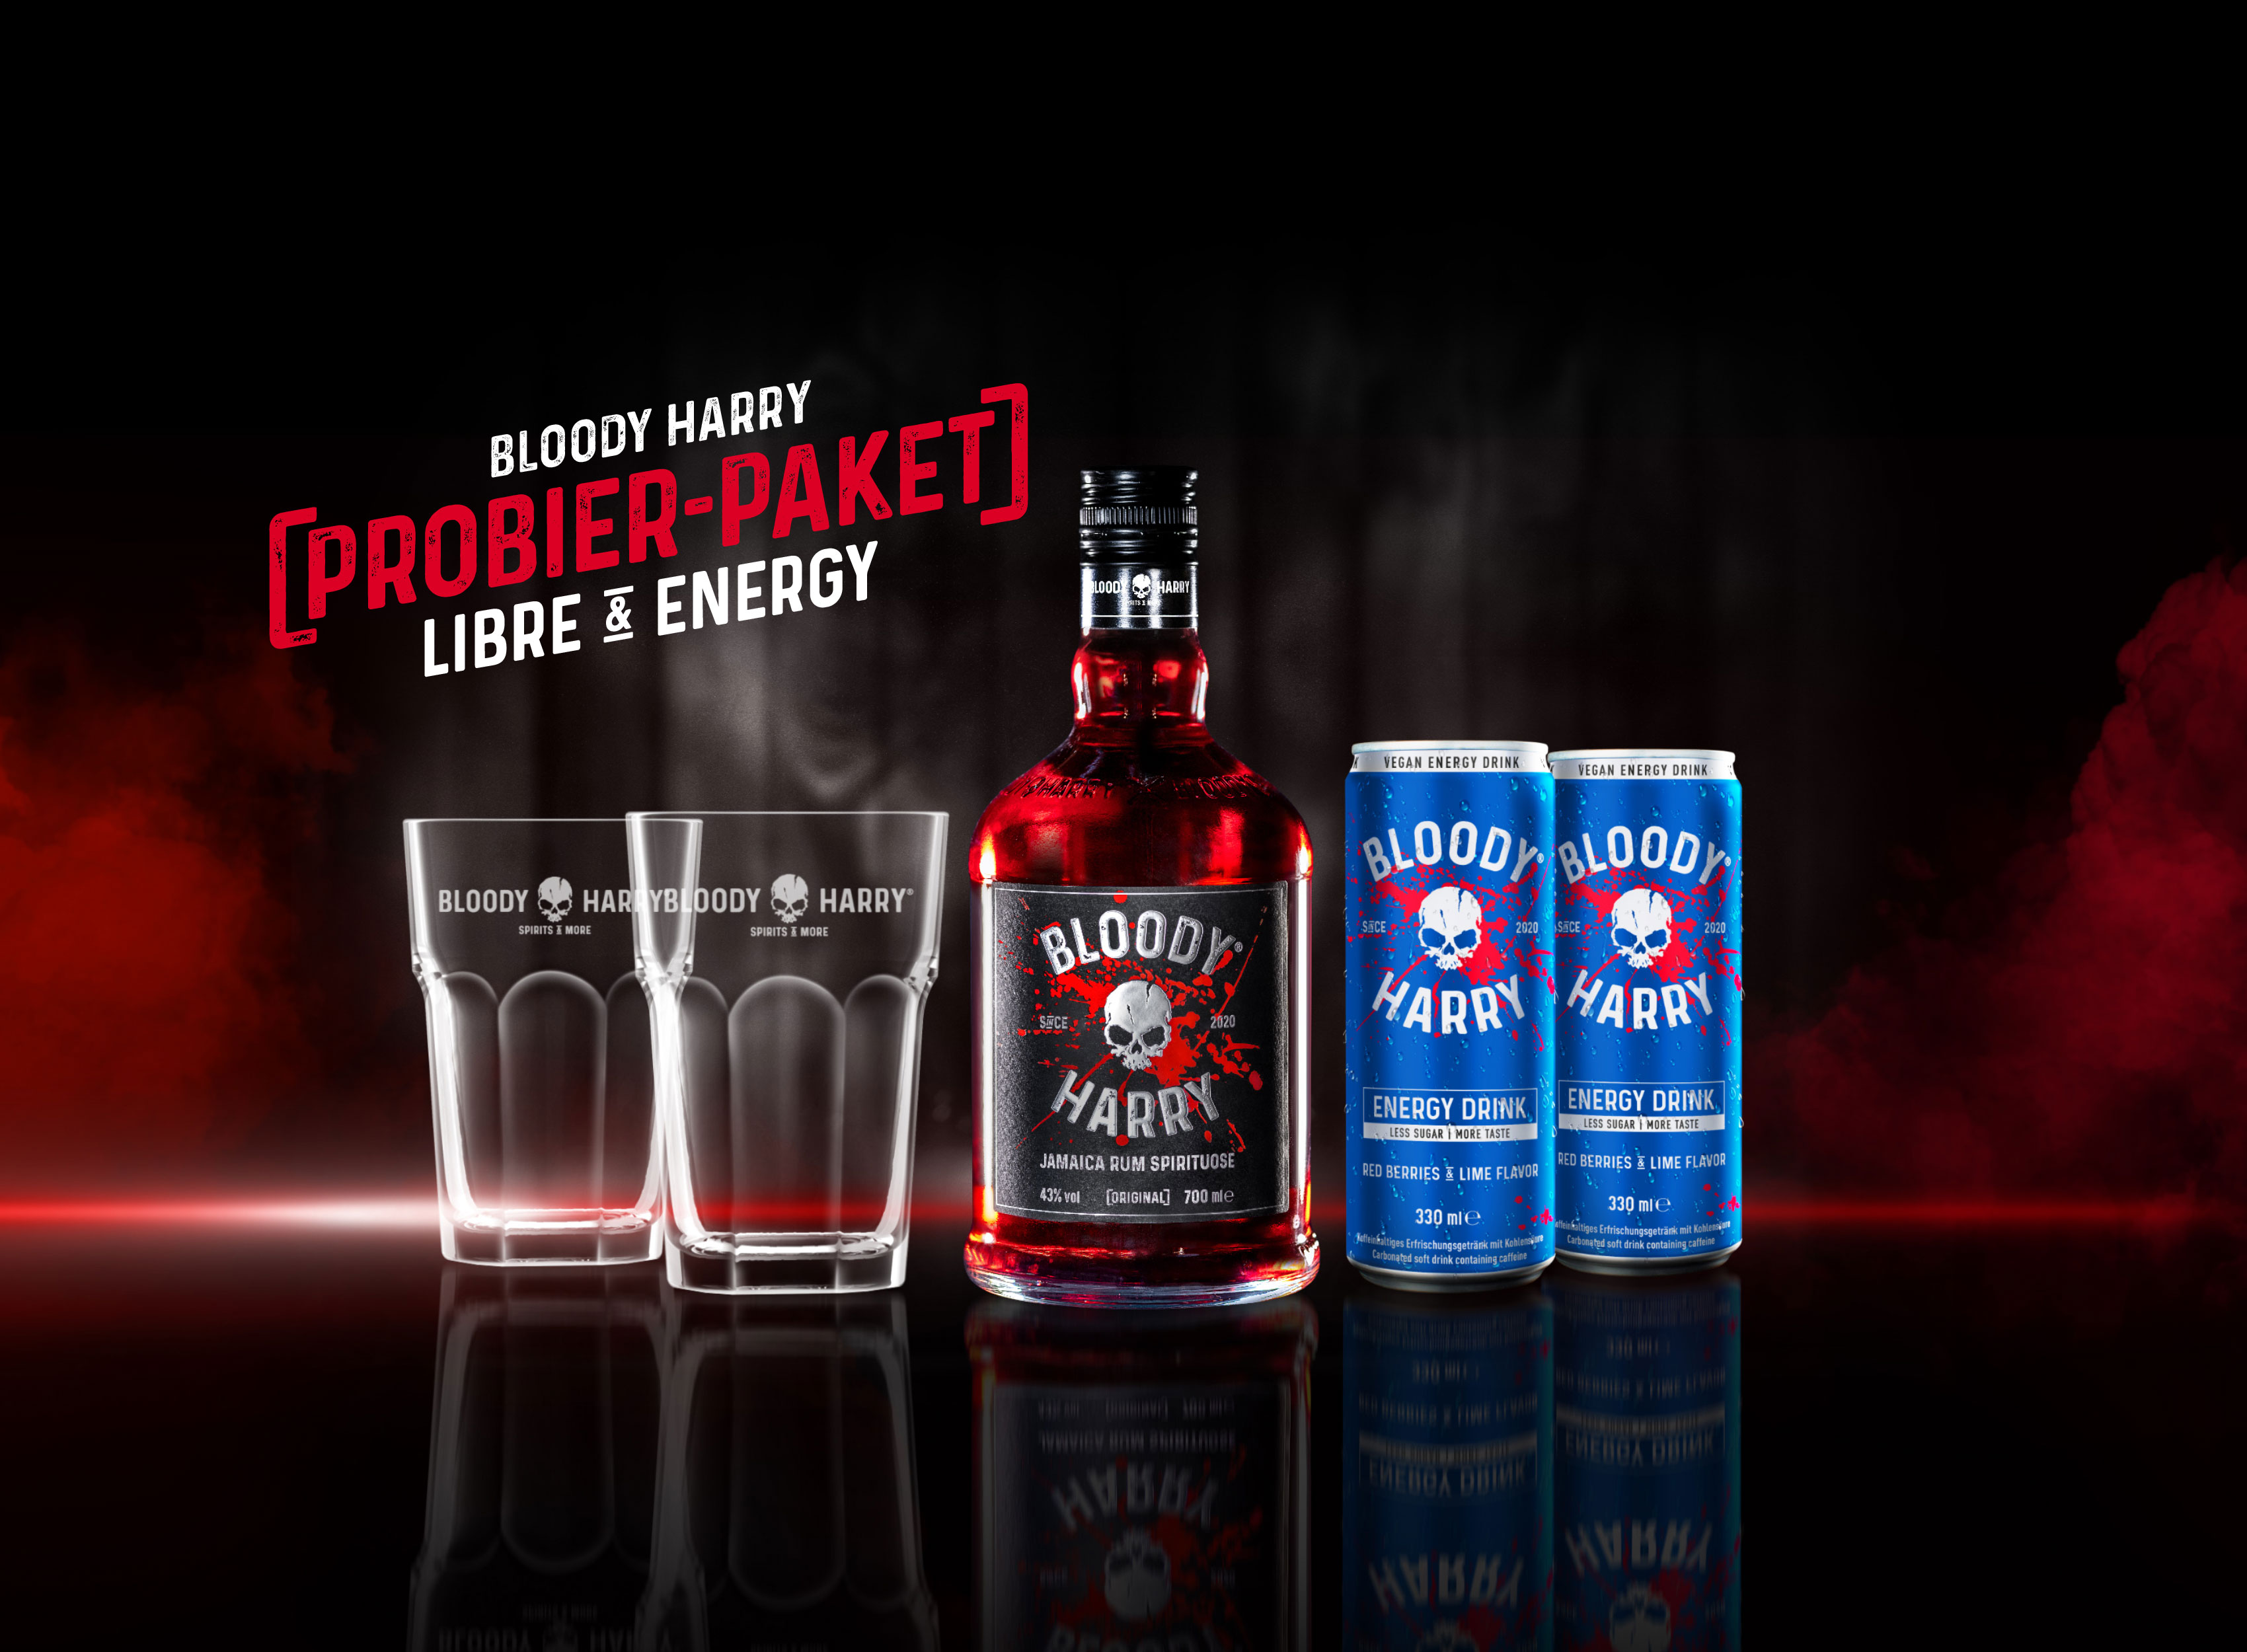 BLOODY HARRY Rum-Spirituose Probier-Paket mit Gläsern